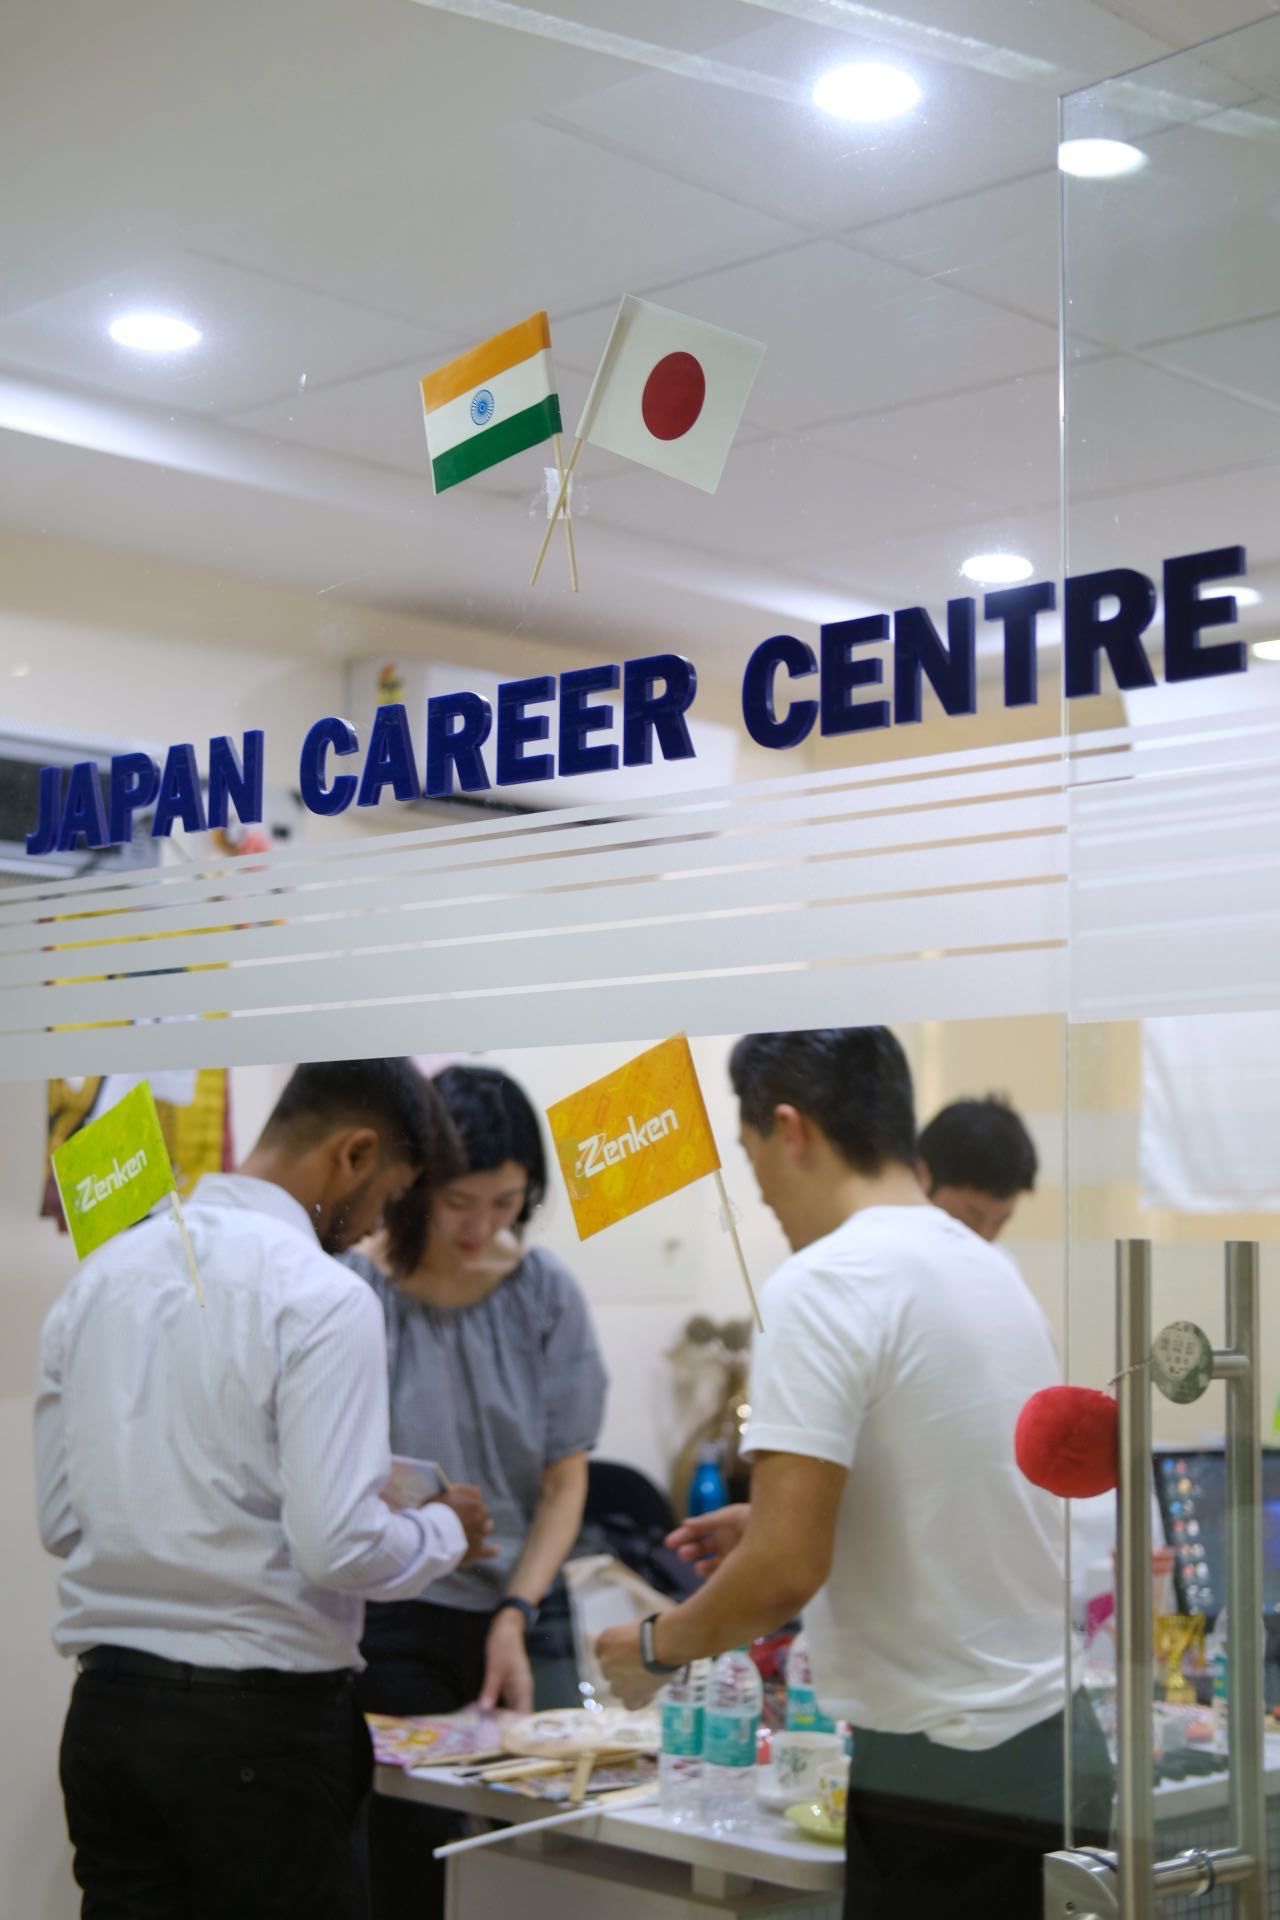 Zenken открыл центры карьеры в Японии в сотрудничестве с индийскими университетами (предоставлено Zenken)